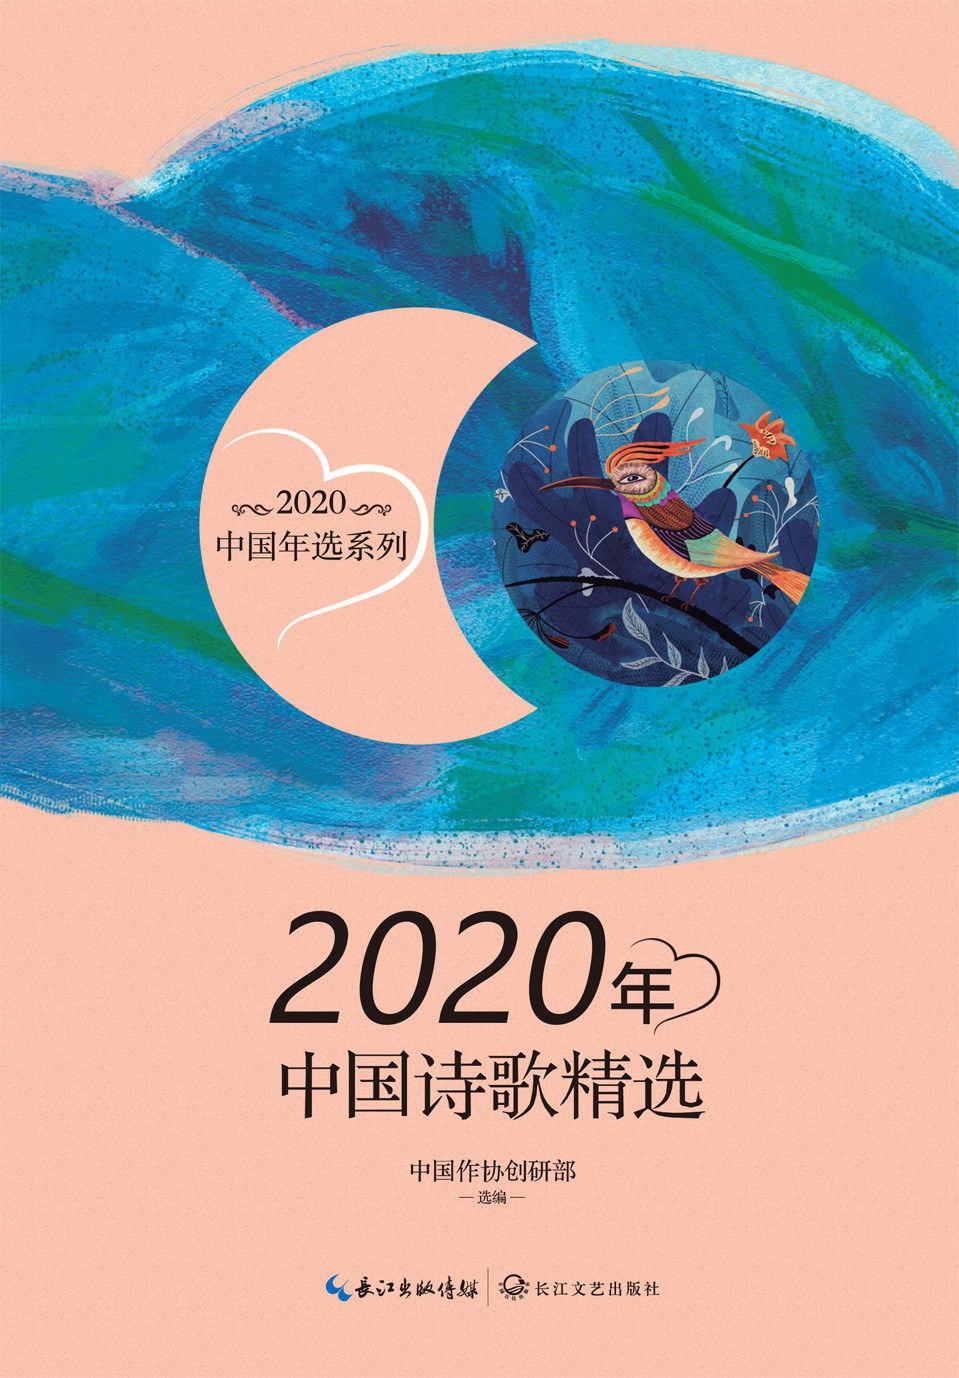 2020年中国诗歌精选